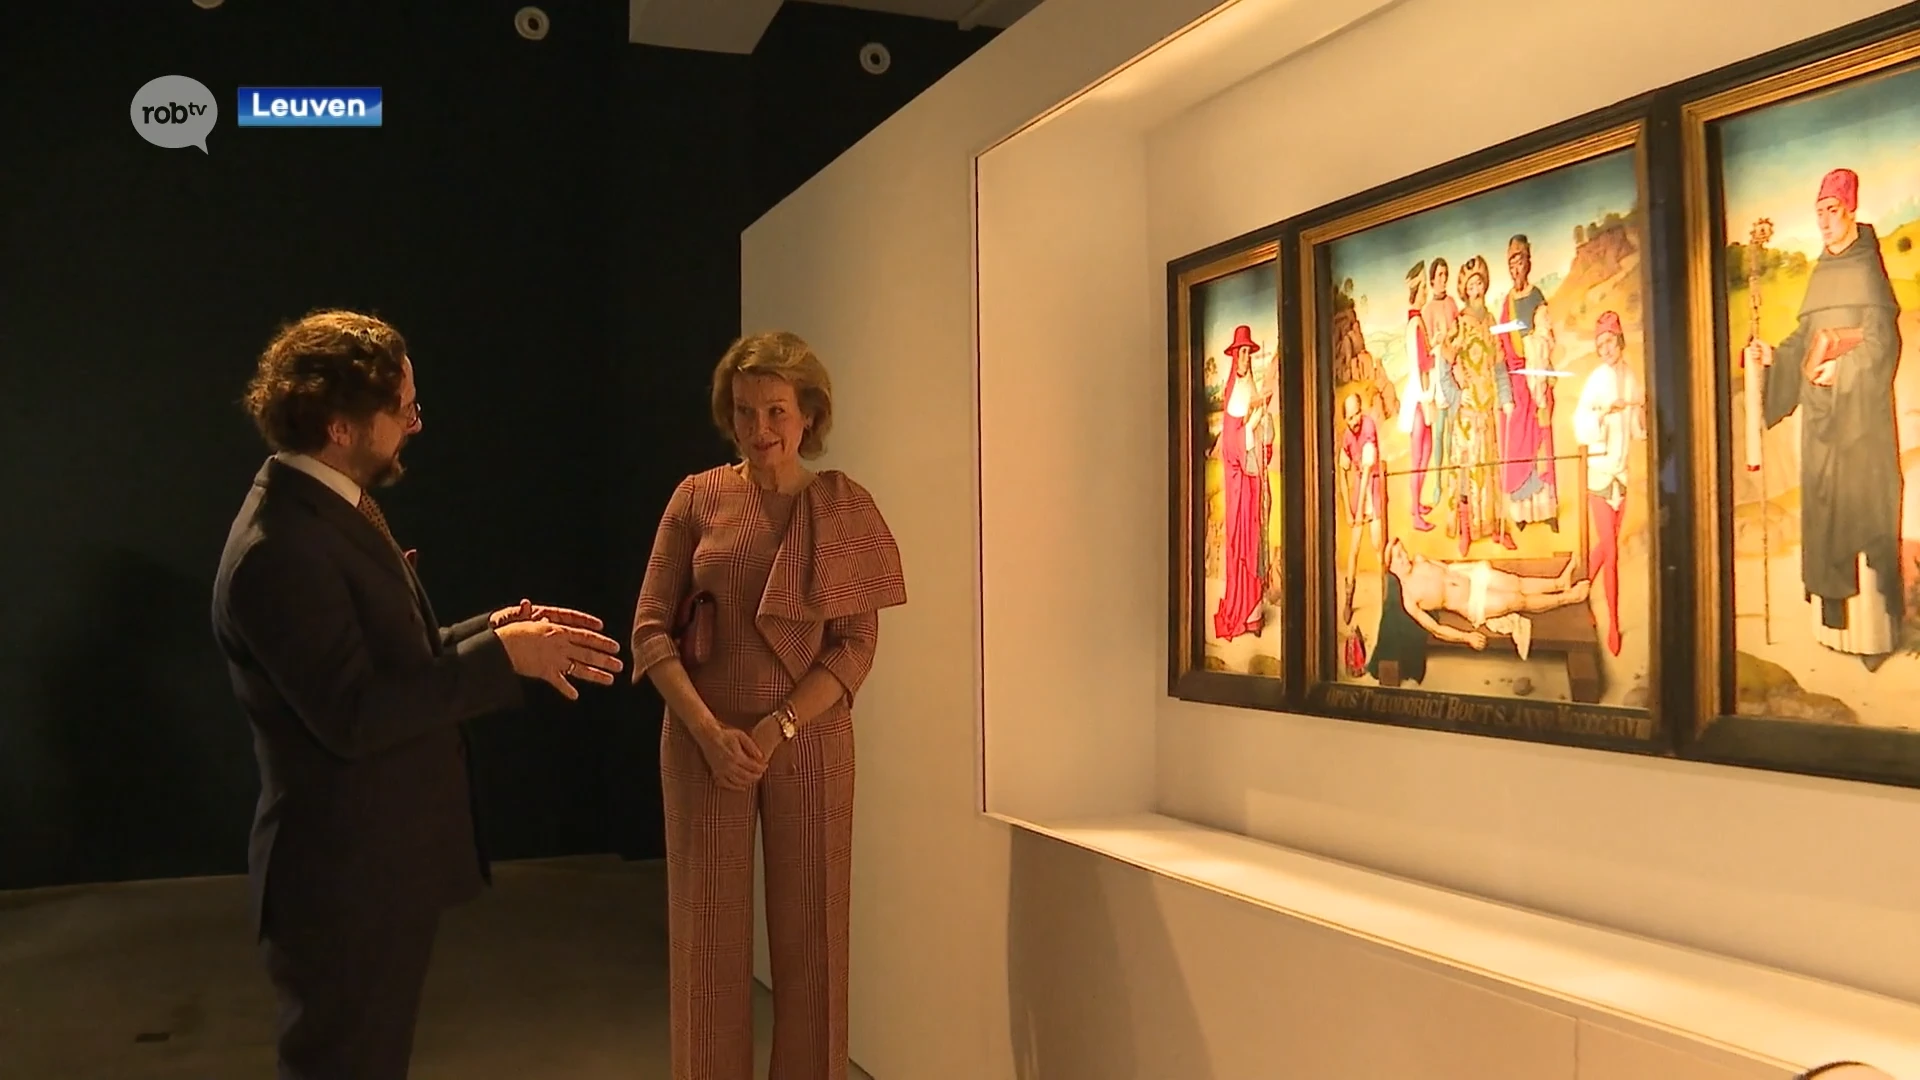 Koningin Mathilde bezoekt tentoonstelling over Dieric Bouts in M Museum in Leuven